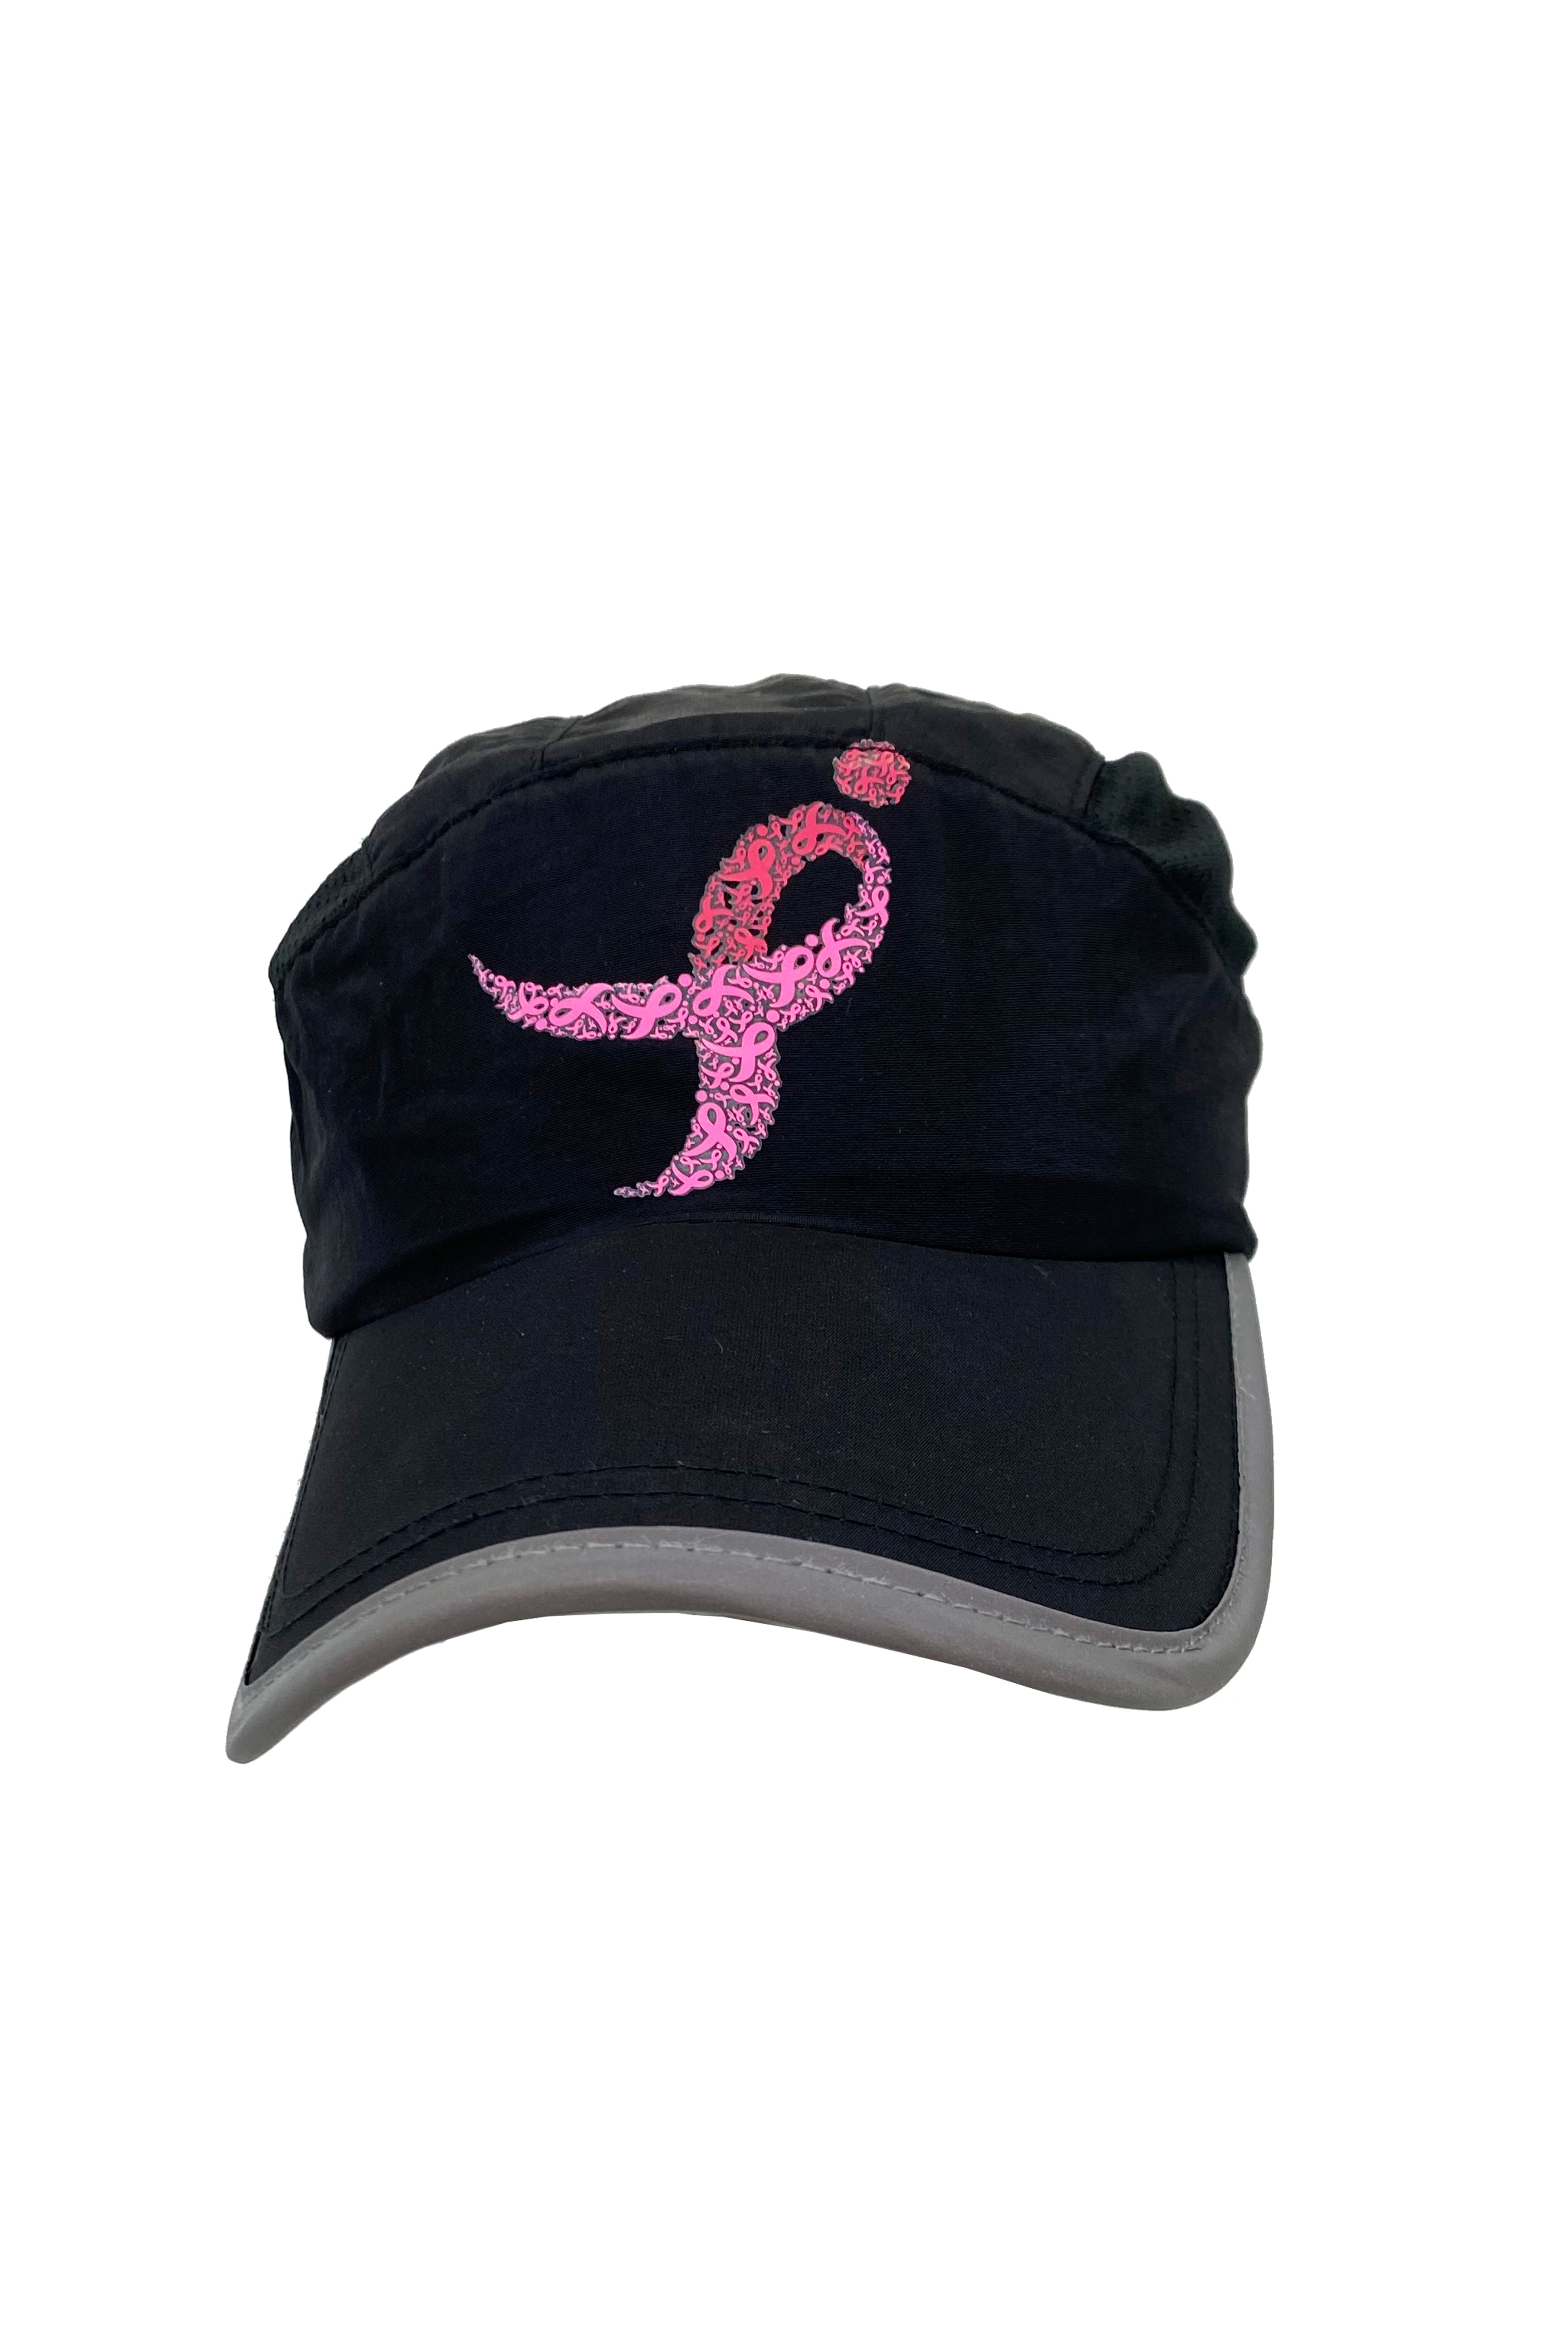 Komen Columbus Pink Ribbon Running Hat/Black